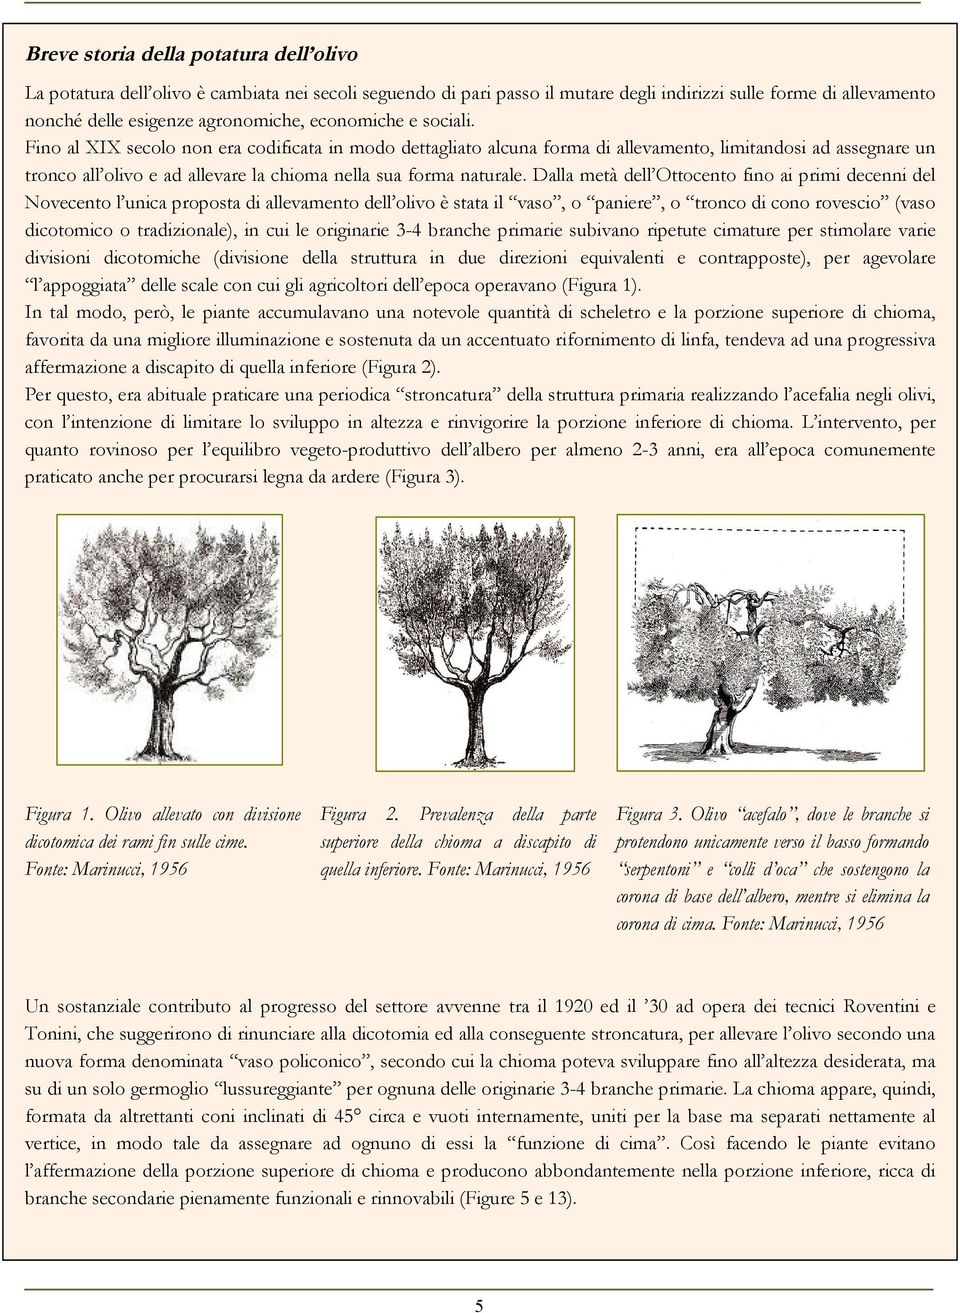 Fino al XIX secolo non era codificata in modo dettagliato alcuna forma di allevamento, limitandosi ad assegnare un tronco all olivo e ad allevare la chioma nella sua forma naturale.